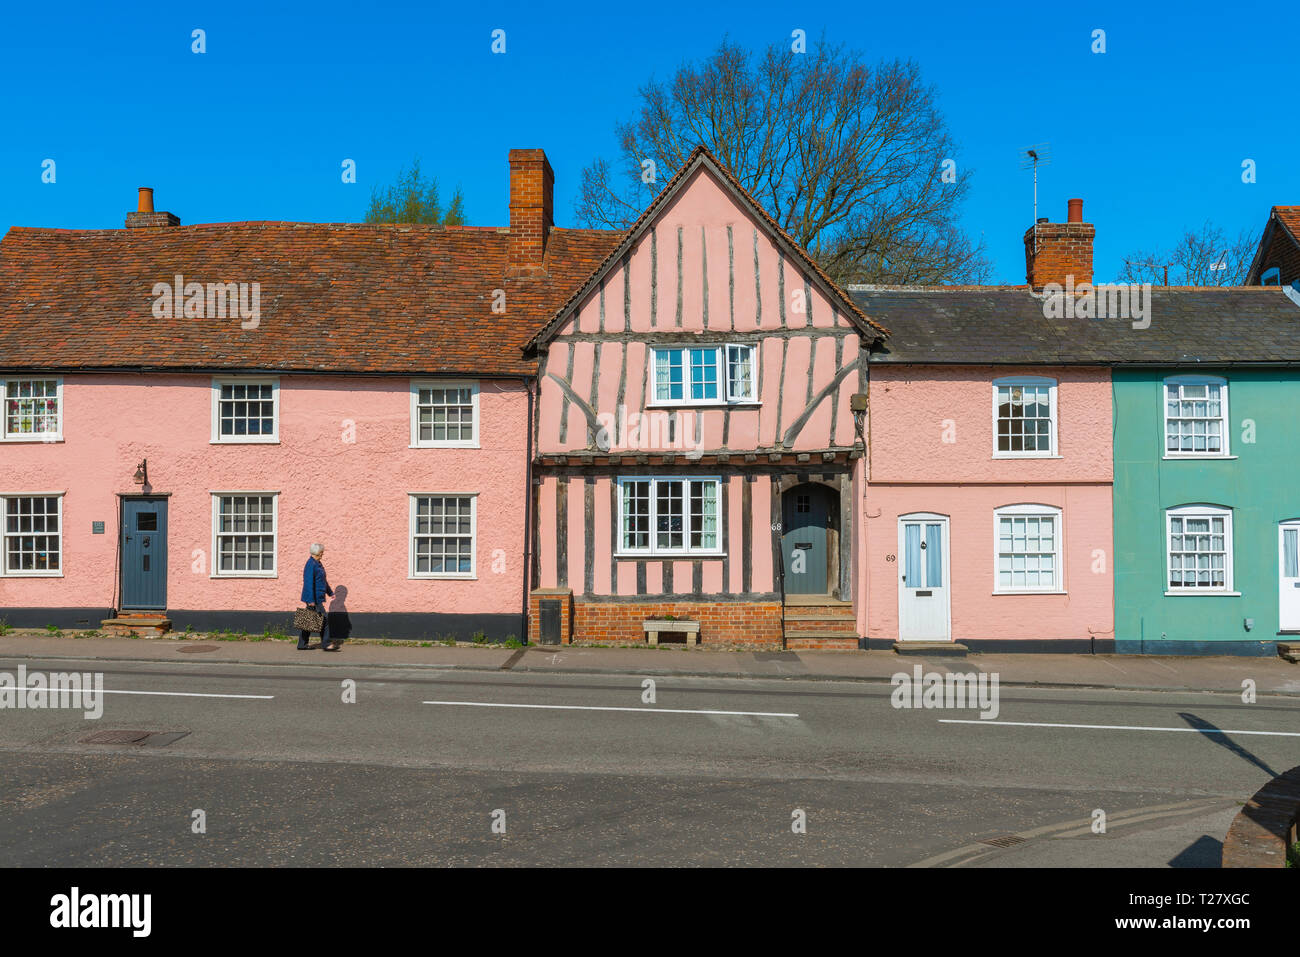 Rose de Suffolk, voir l'été dans des bâtiments historiques dans la région de Lavenham High Street peint d'une couleur rose caractéristique typique des vieux bâtiments de Suffolk, UK. Banque D'Images